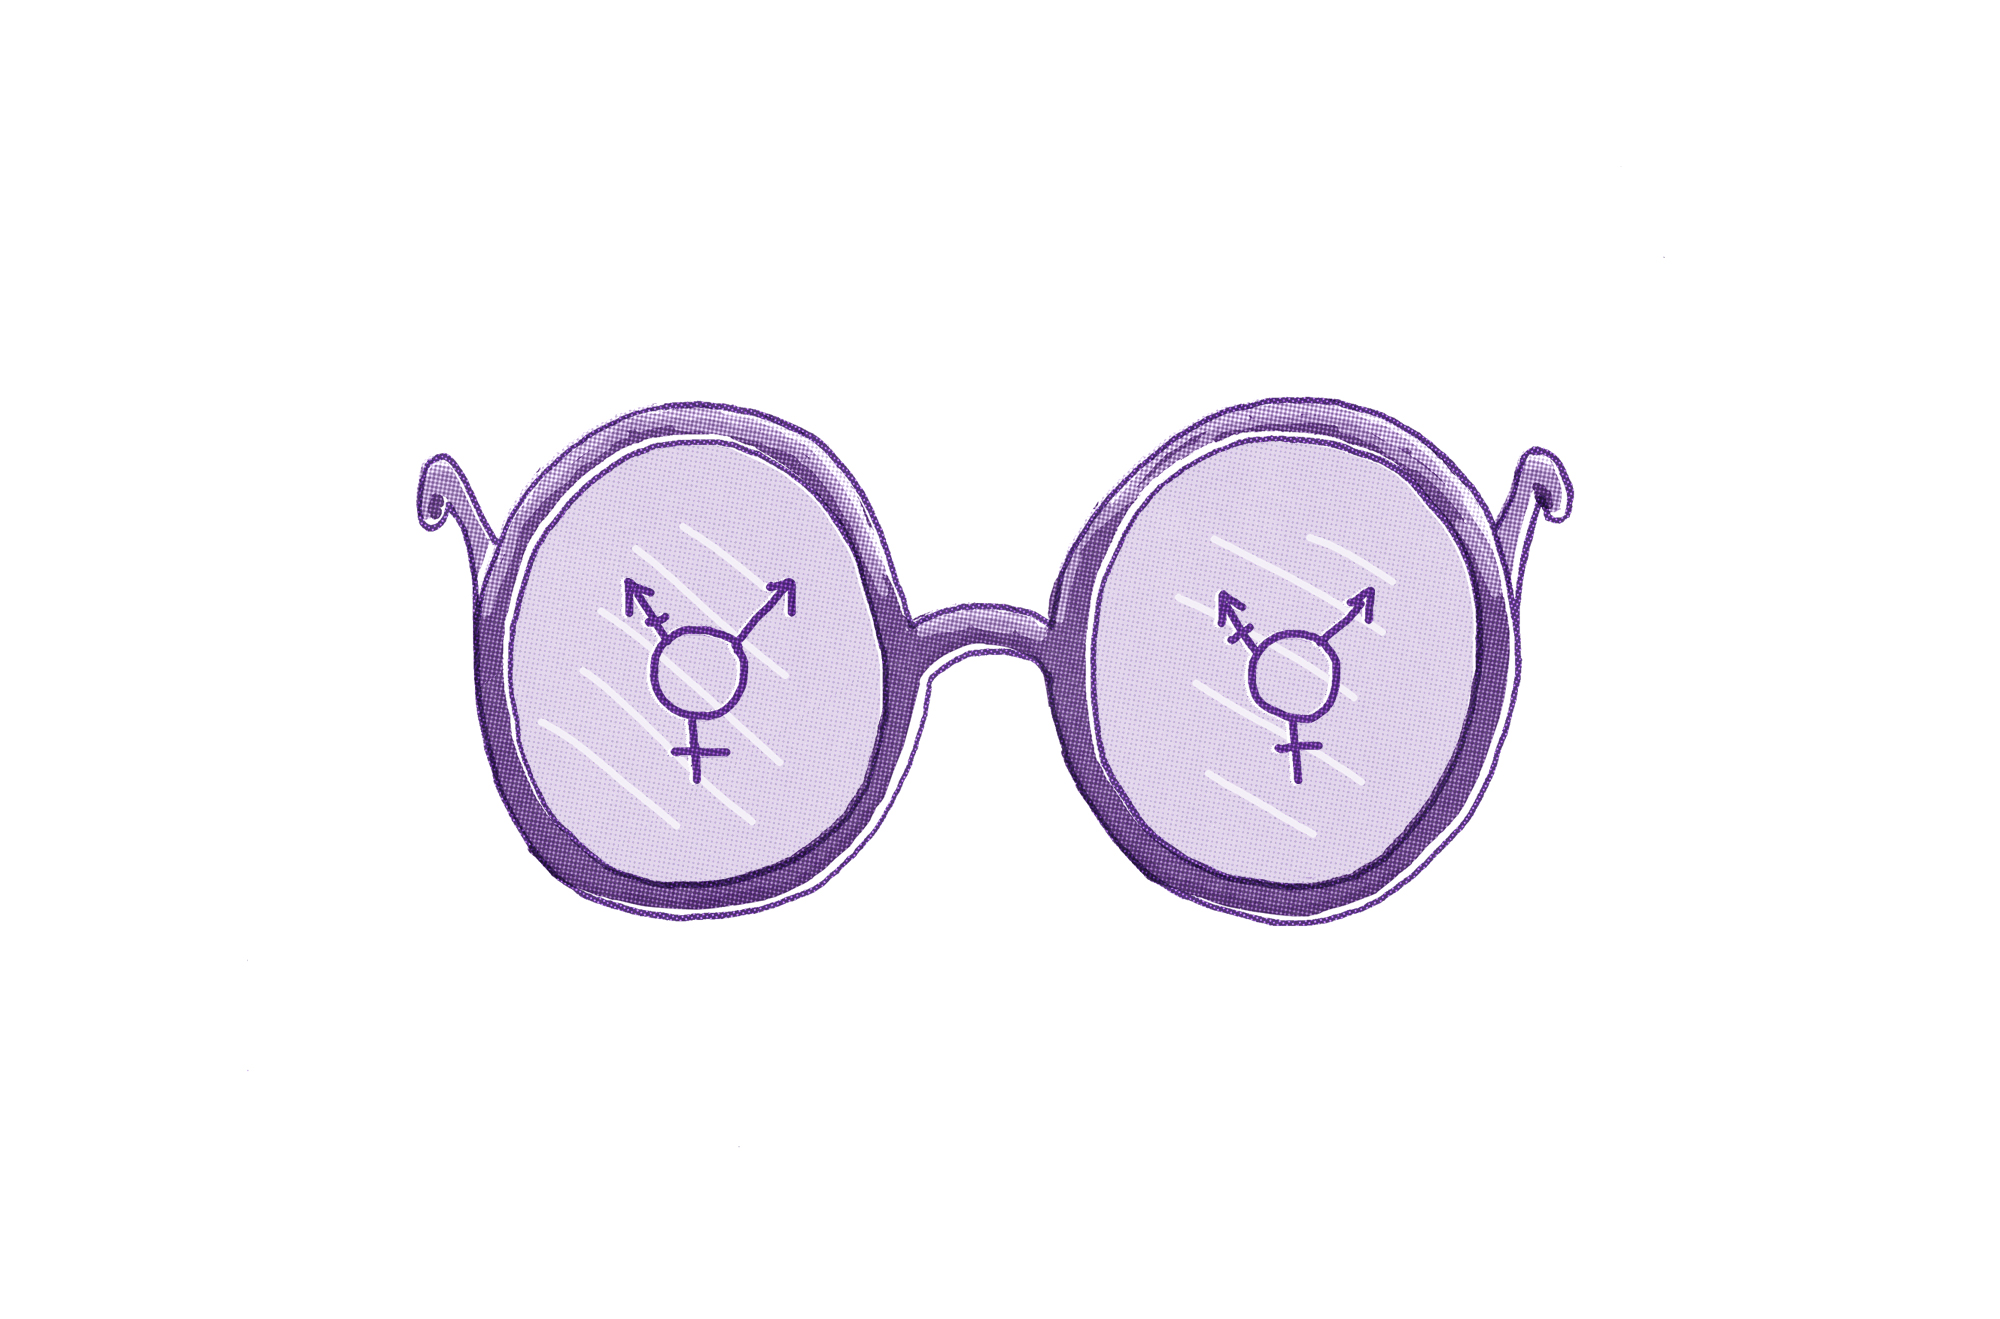 Illustration einer lila Brille mit Geschlechtssymbolen auf den Gläsern. Das linke Glas hat ein kombiniertes männliches und weibliches Symbol, während das rechte Glas ein ähnliches, aber etwas anderes kombiniertes Geschlechtssymbol hat.